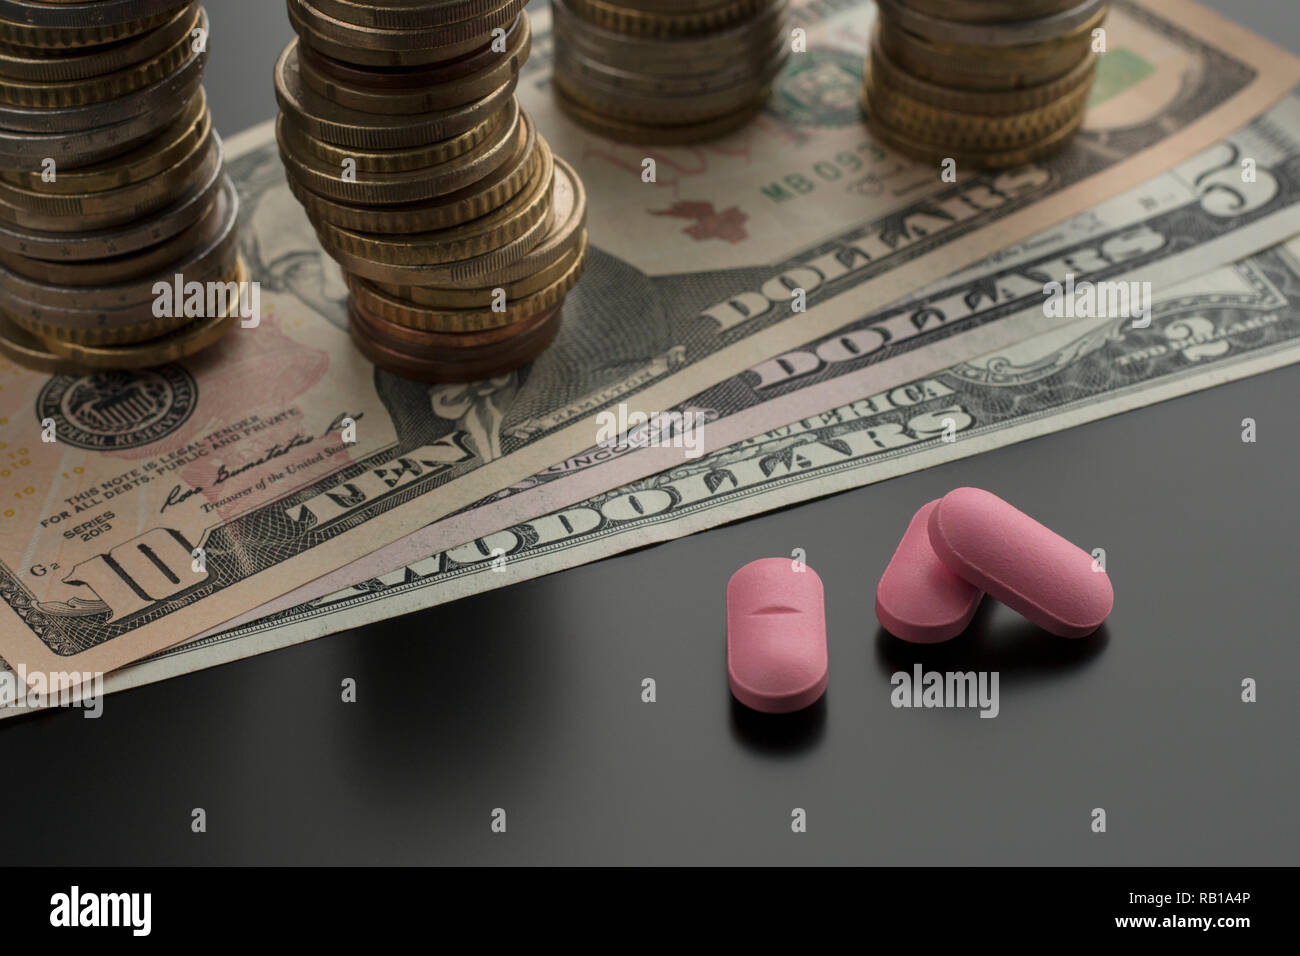 Pilules roses, des comprimés, des médicaments avec des dollars et des piles de pièces de monnaie sur l'arrière-plan. Notion de frais médicaux Banque D'Images